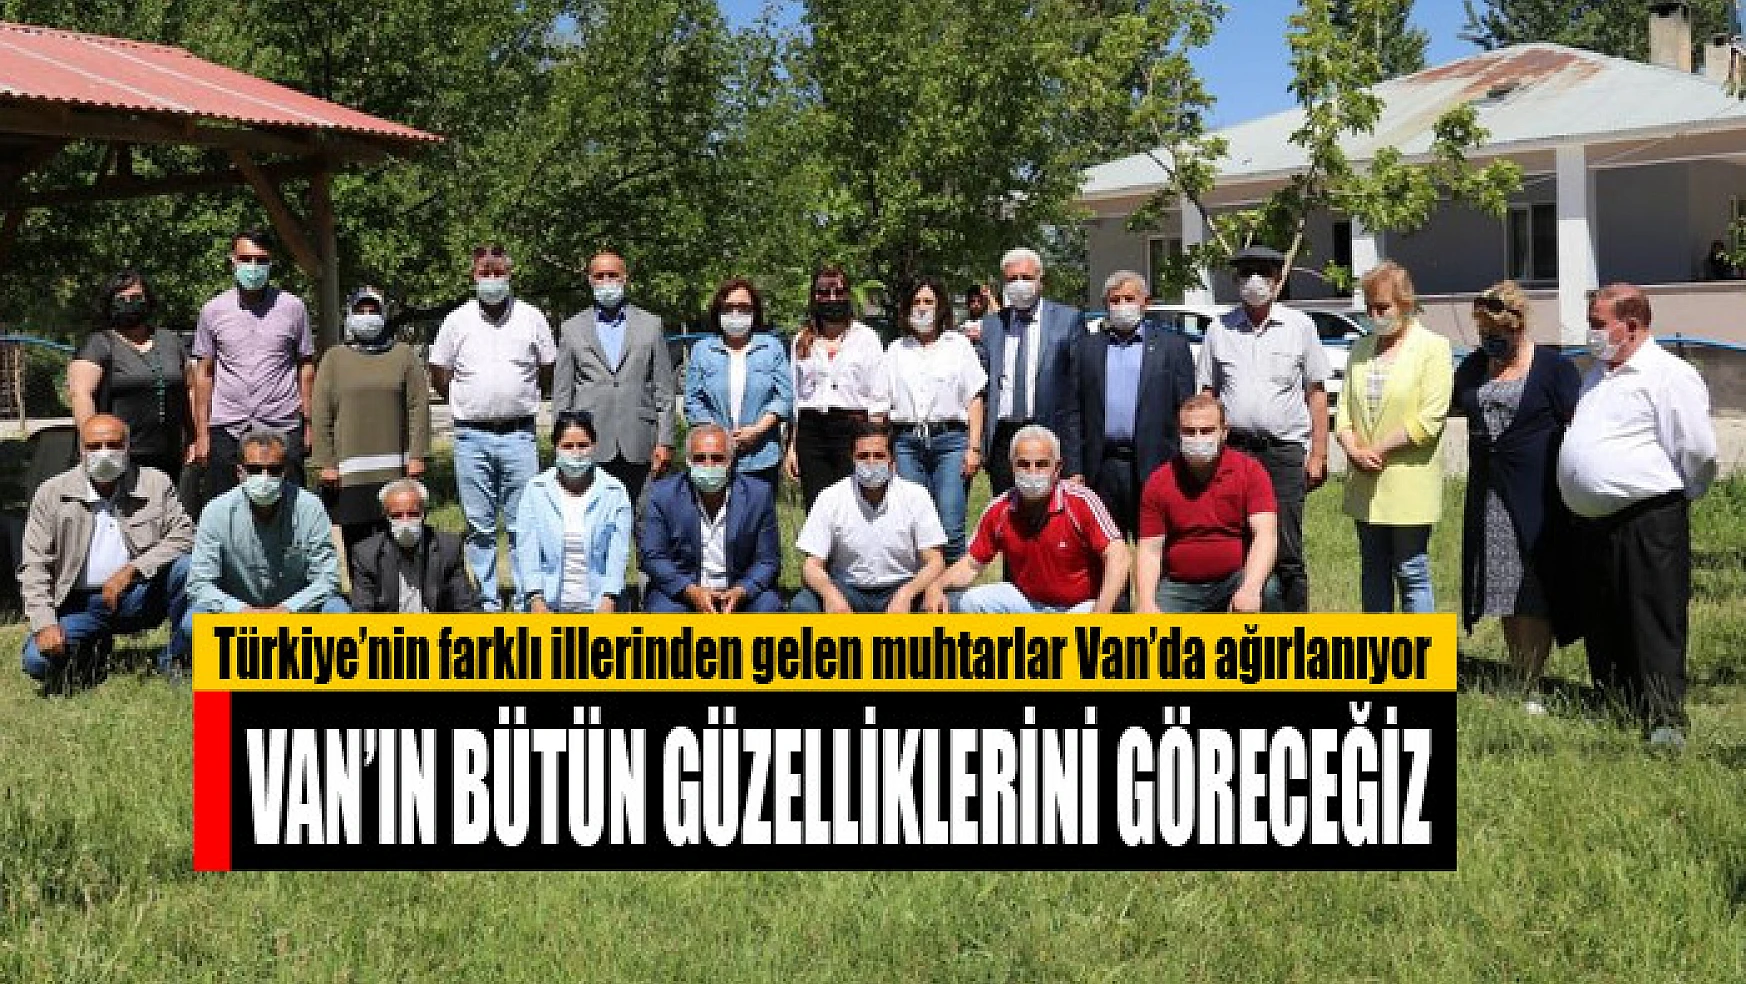 Türkiye'nin farklı illerinden gelen muhtarlar Van'da ağırlanıyor